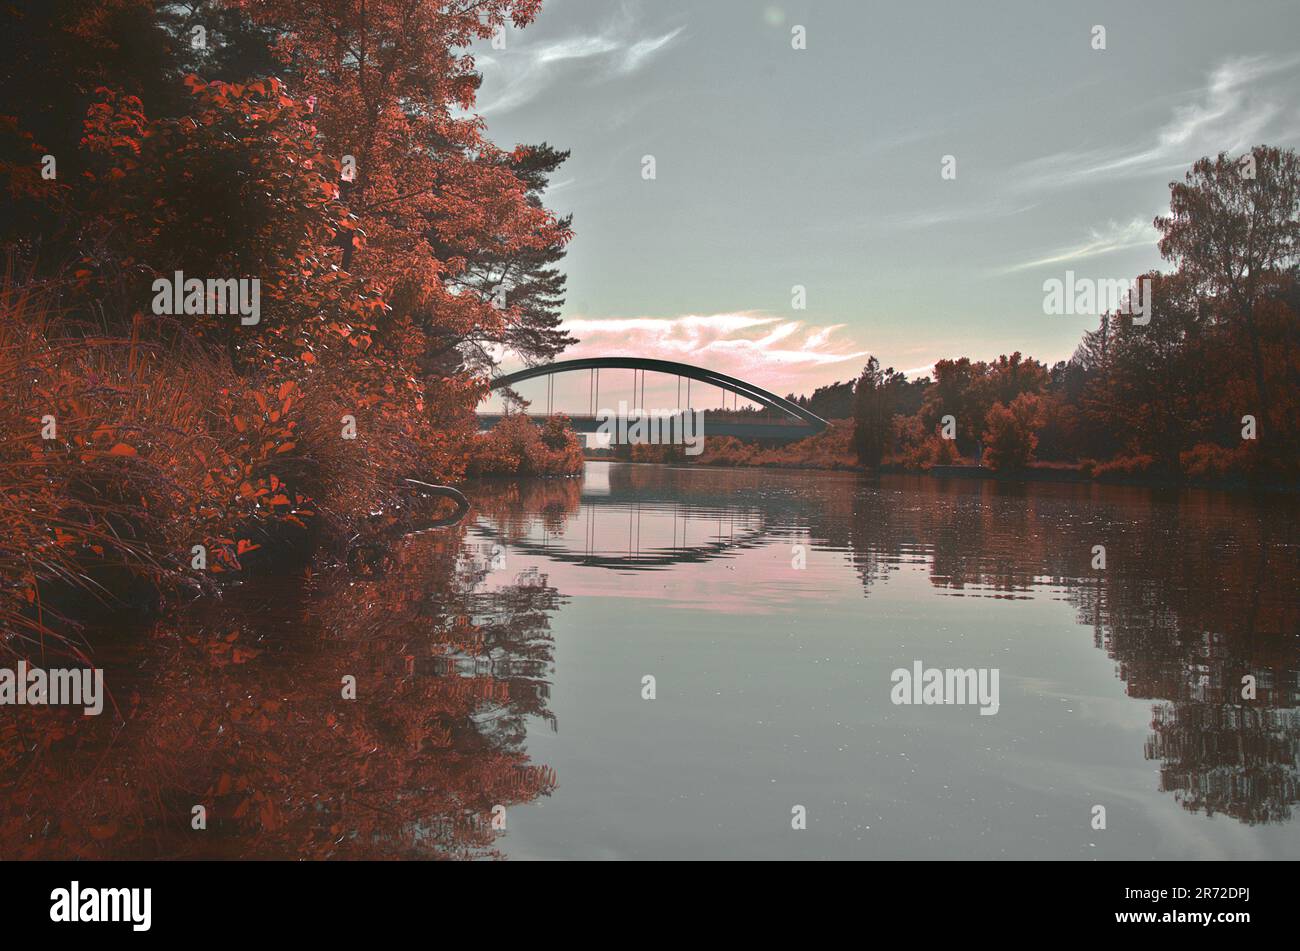 Serenità al suo meglio: Bellissimo ponte riflesso in acqua Foto Stock